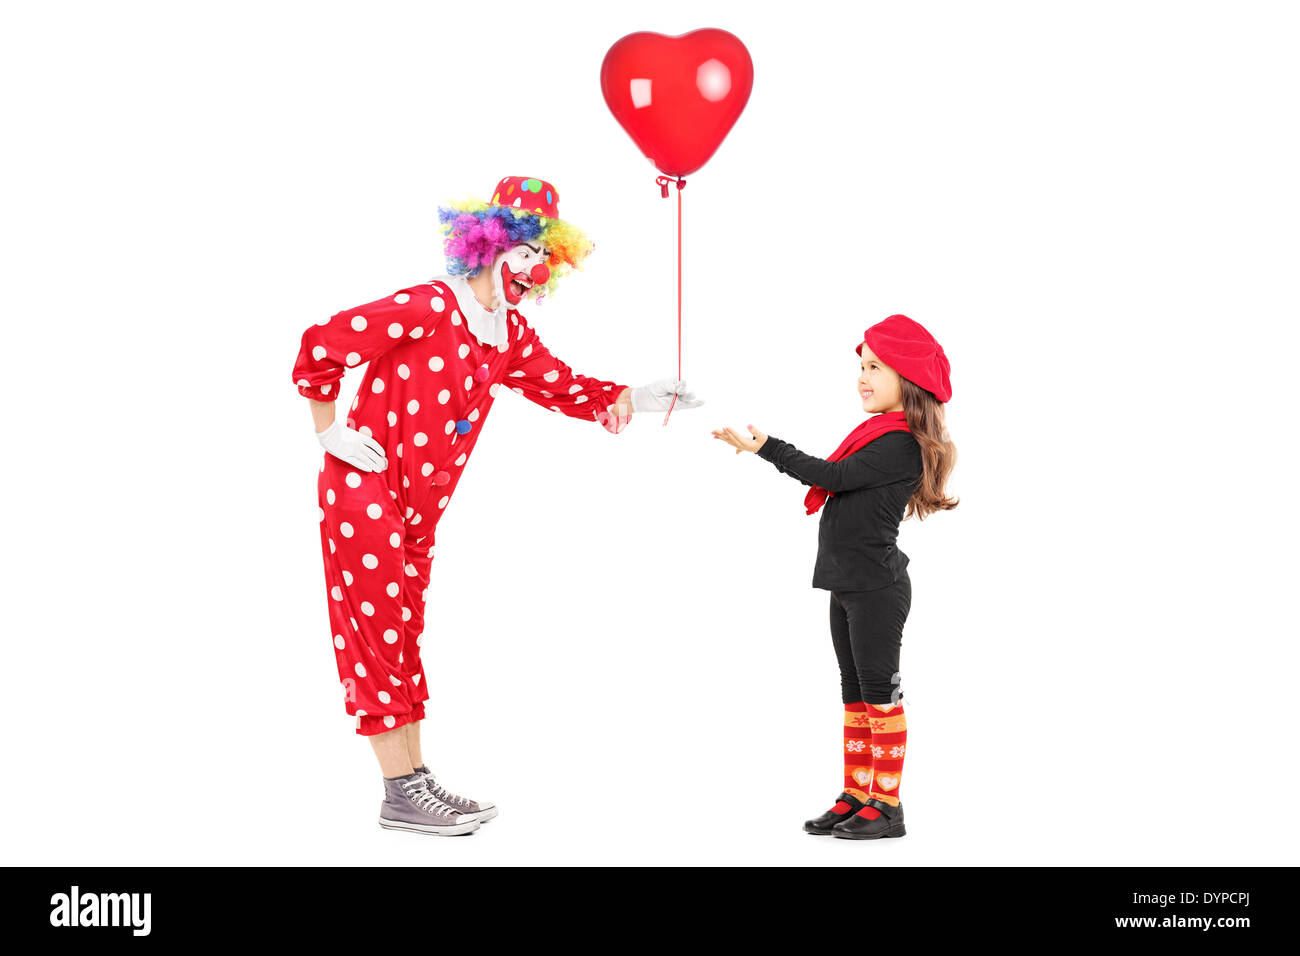 Clown mâle en donnant un ballon rouge à une petite fille Banque D'Images